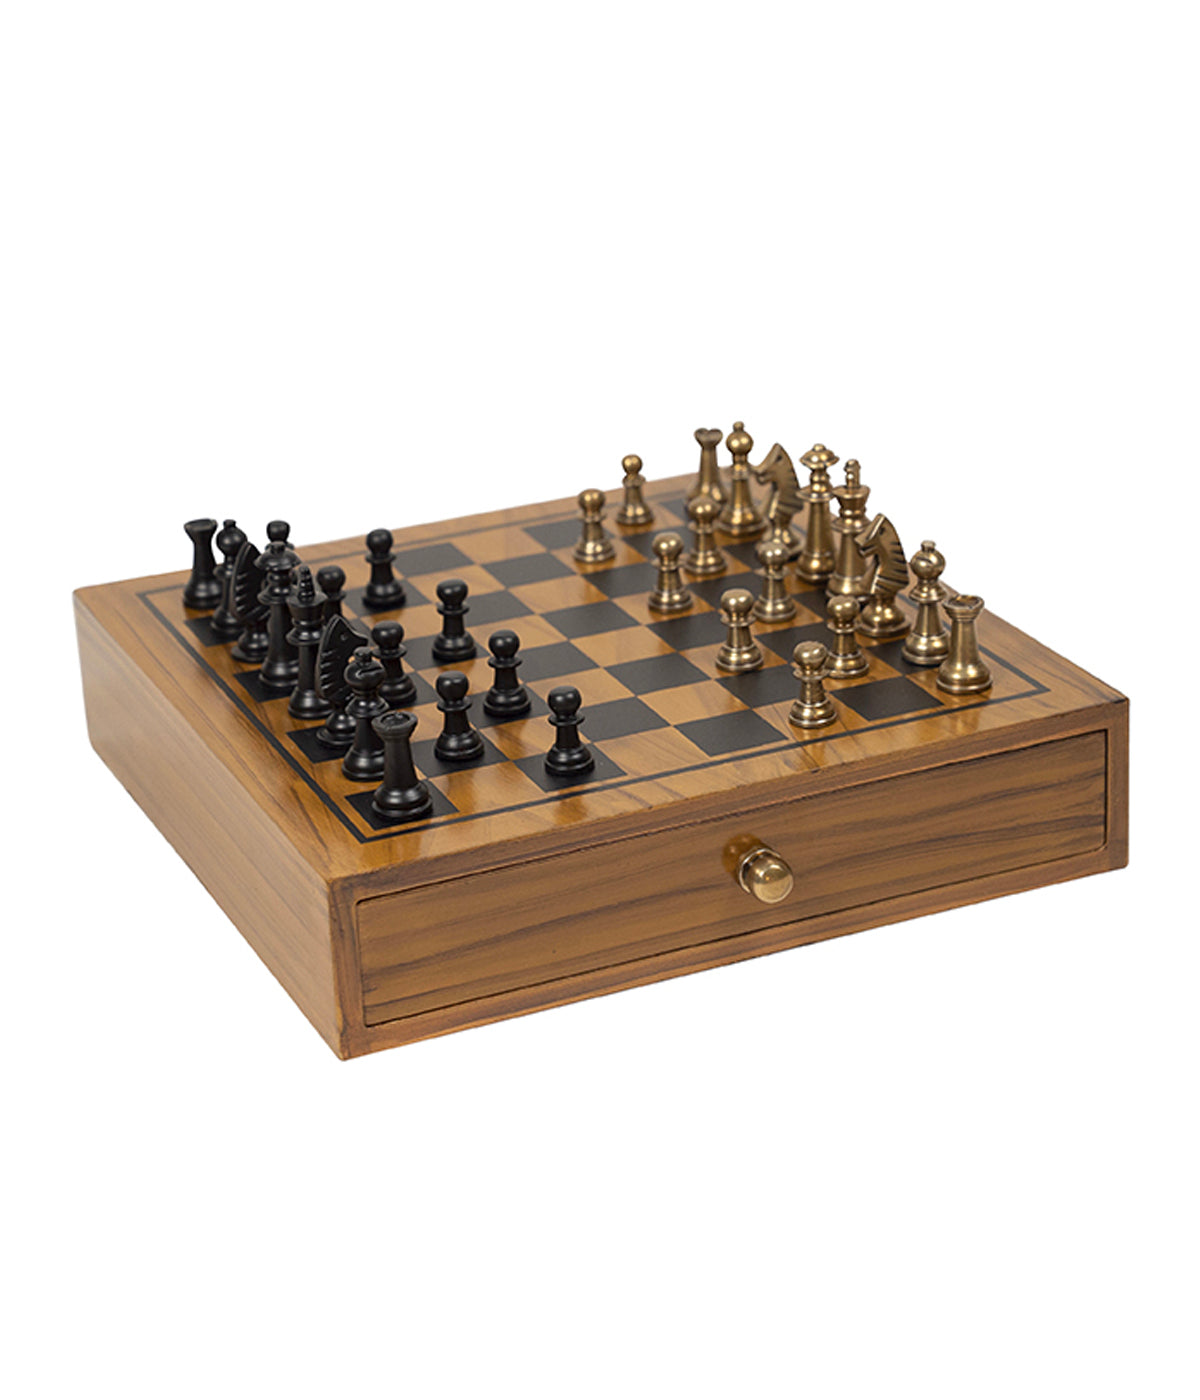 Fischer Chess Set in Wood